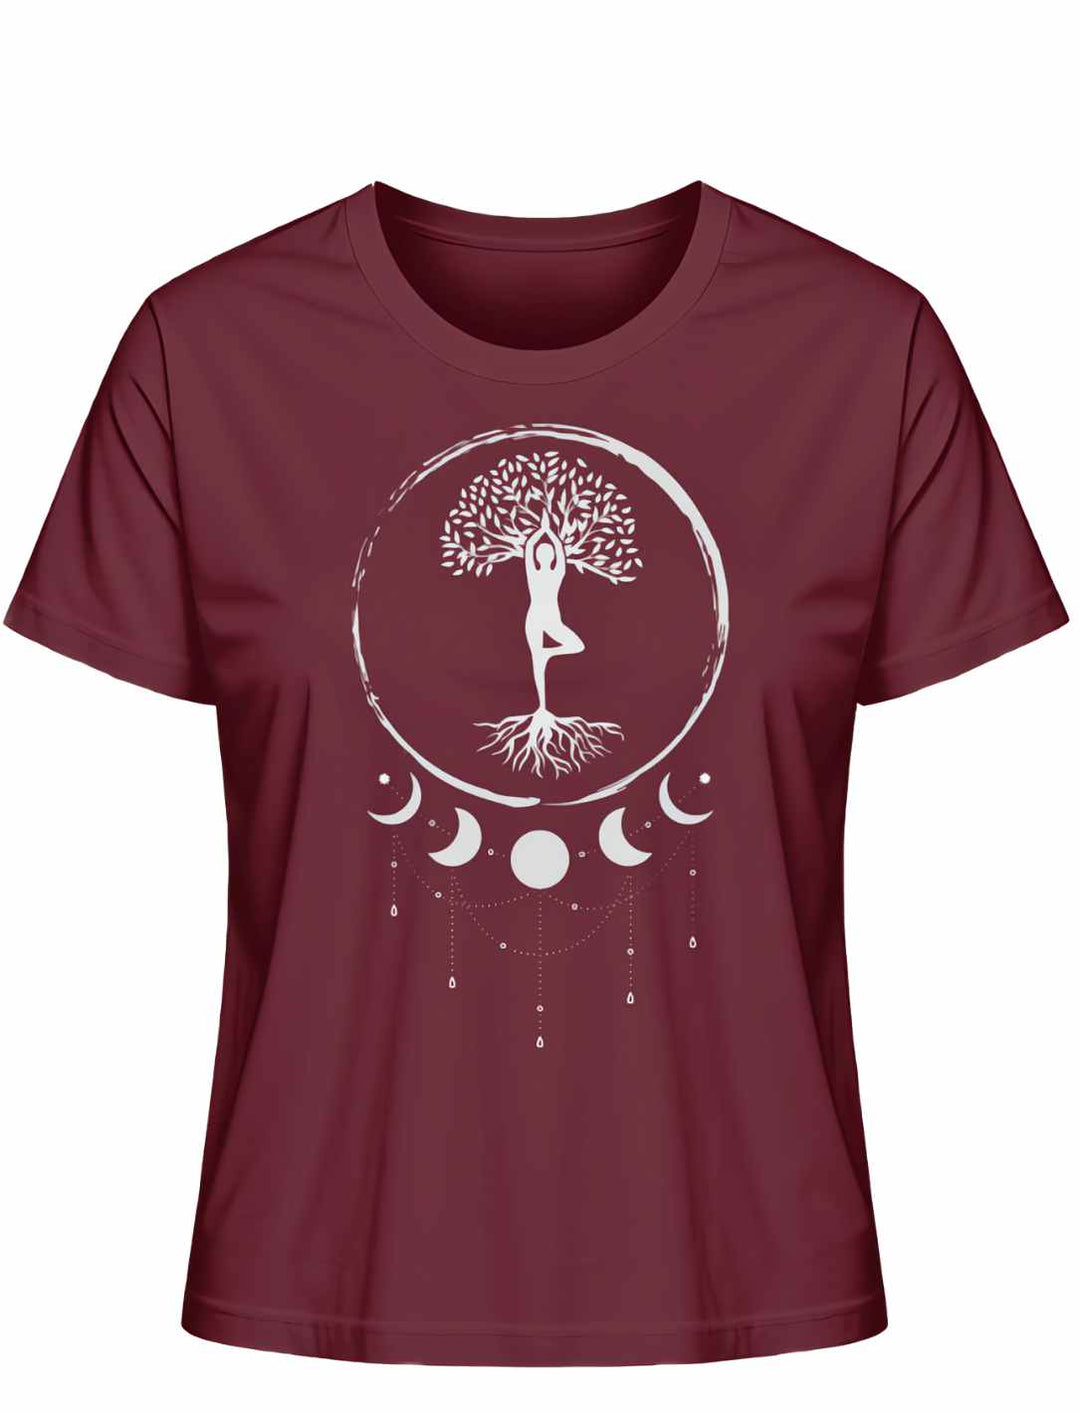 Seelenbaum der Mondträumer T-Shirt in Burgund, flach liegend auf weißem Untergrund - Runental.de